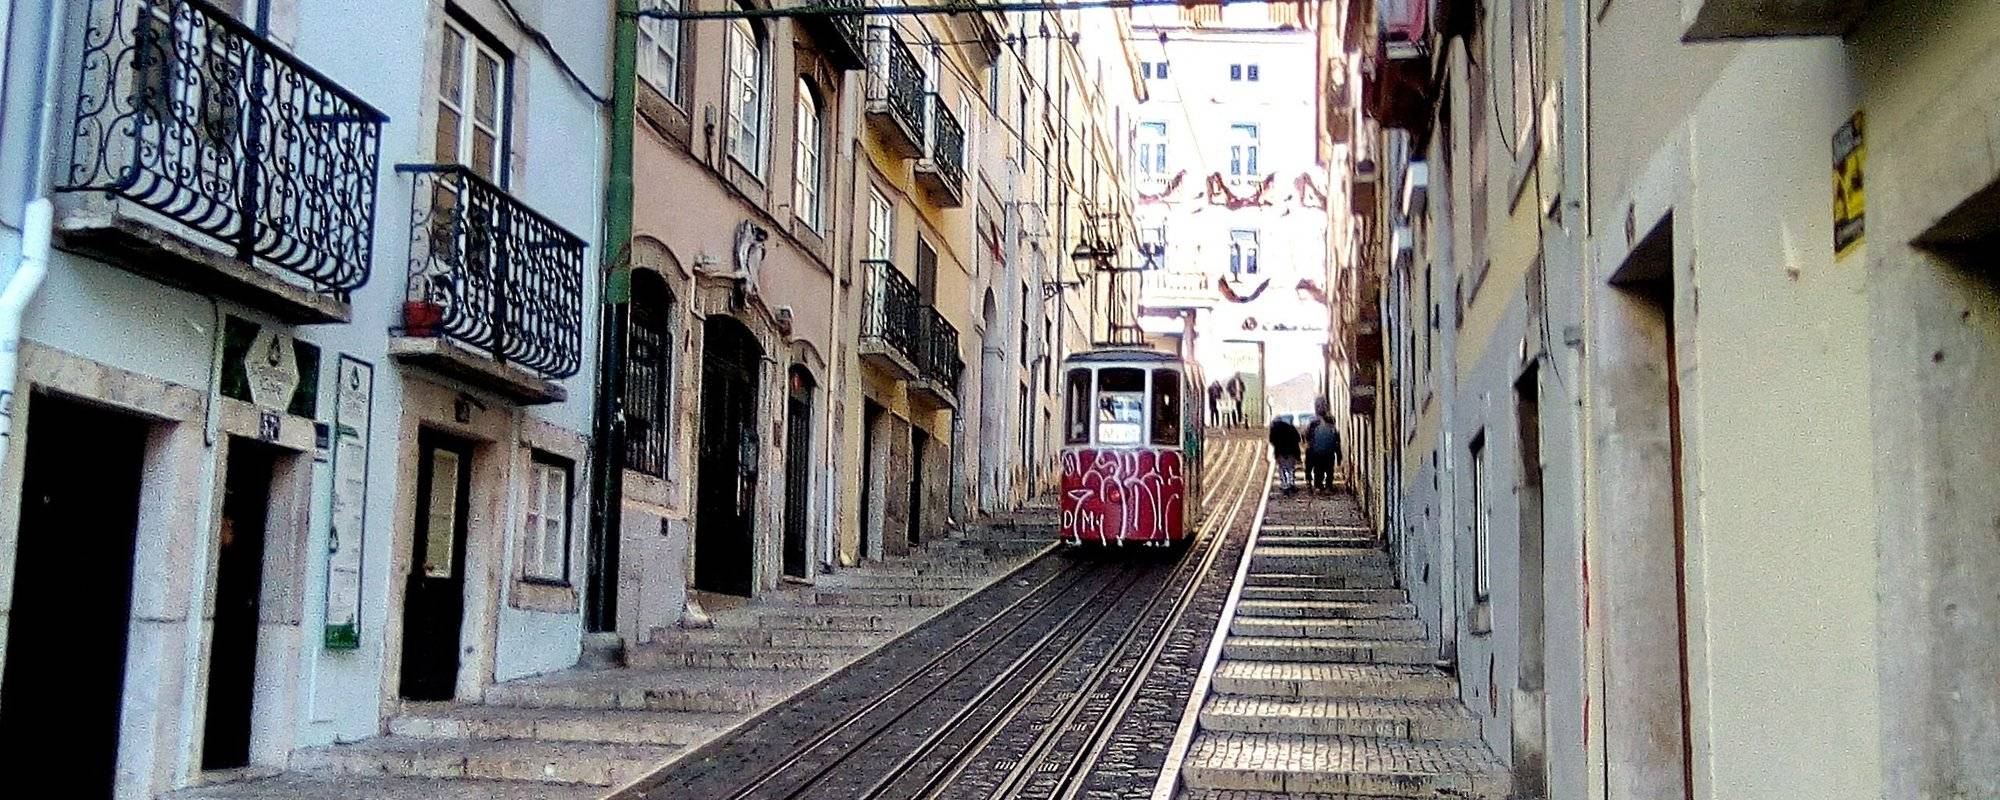 📷 18 ▶ Exploring the old Lisbon-Bairro Alto▶ 🇵🇹 ®️😃